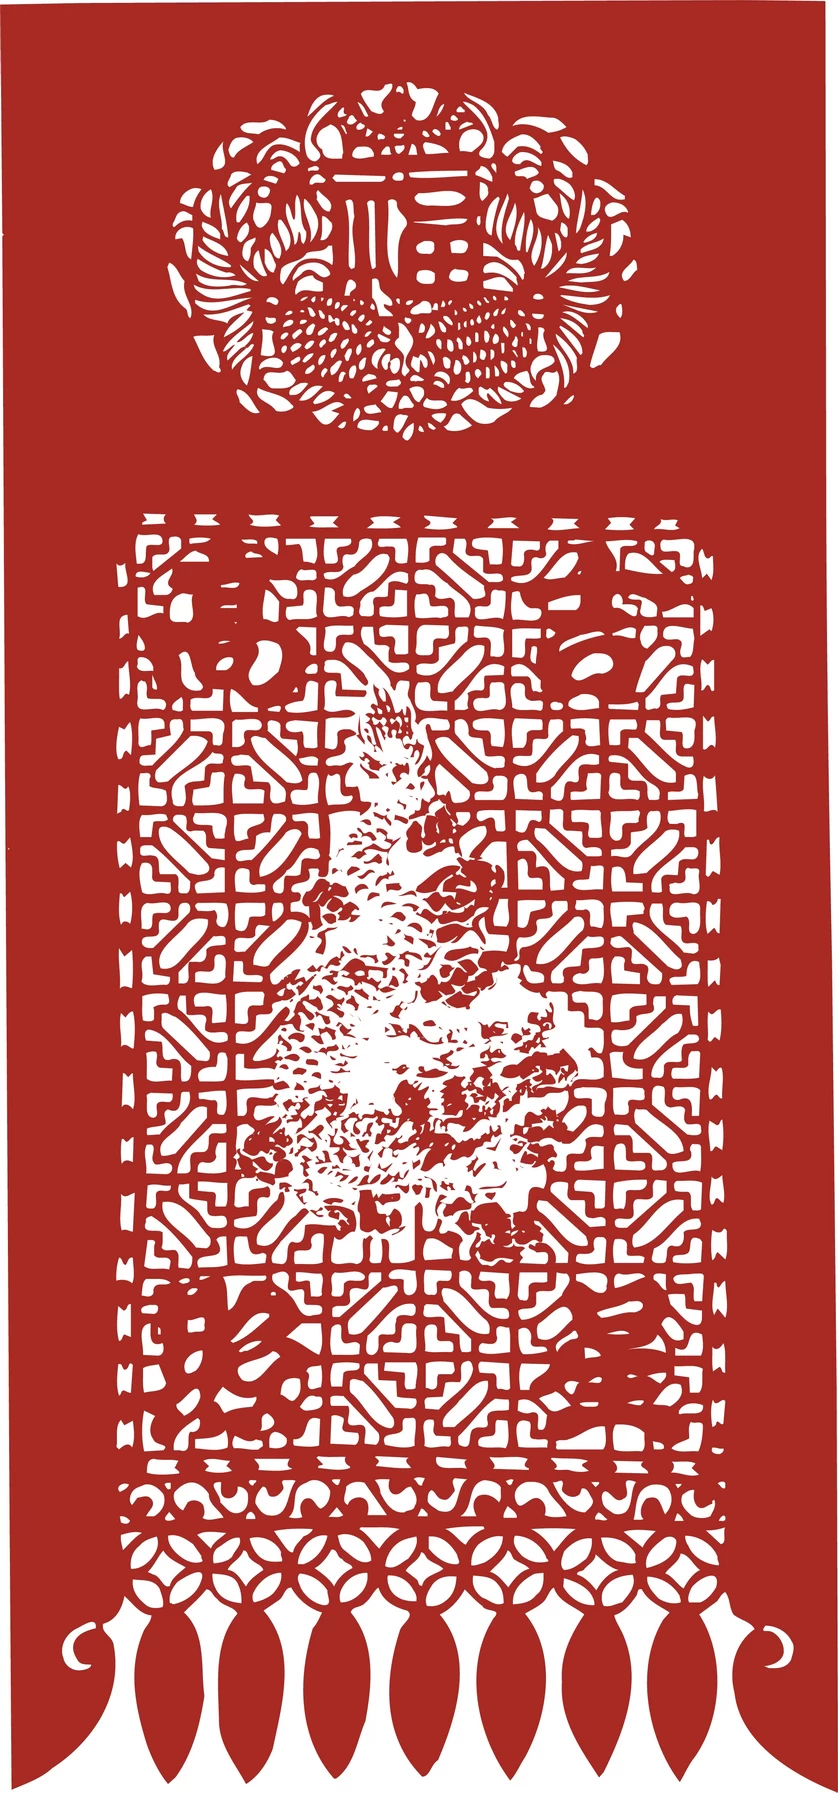 中国风中式传统喜庆民俗人物动物窗花剪纸插画边框AI矢量PNG素材【1953】